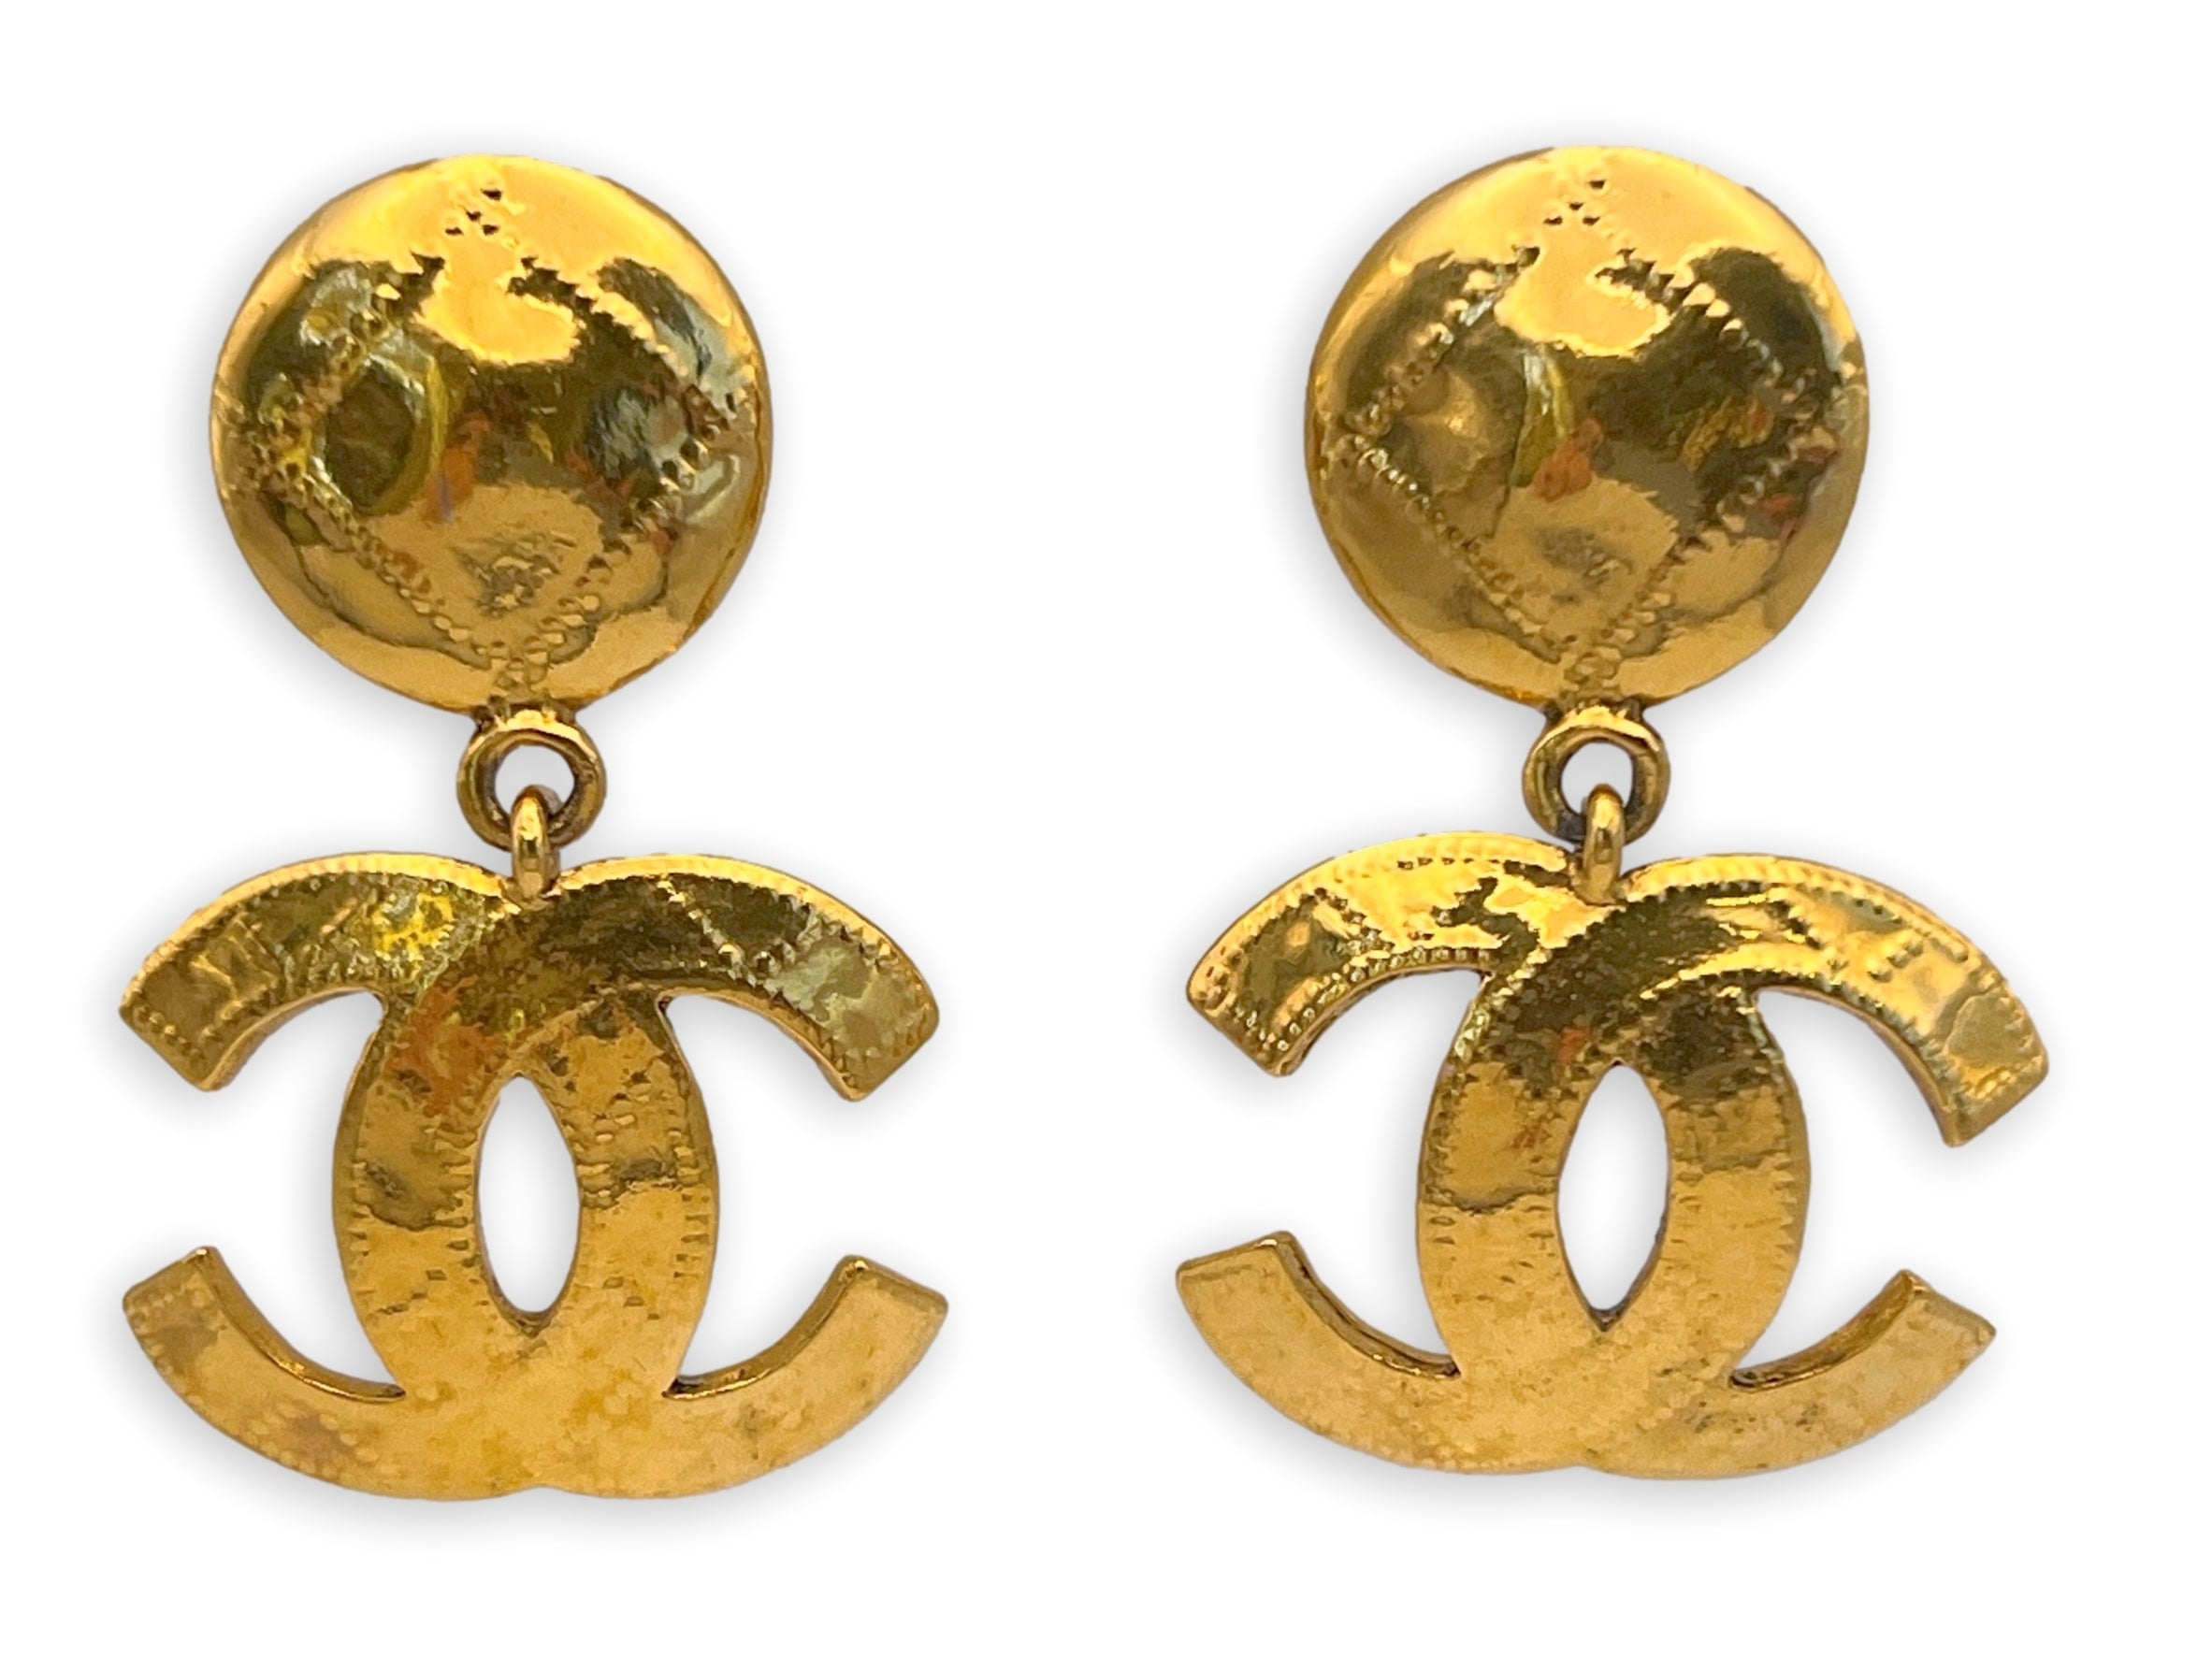 chanel logo dangle earrings